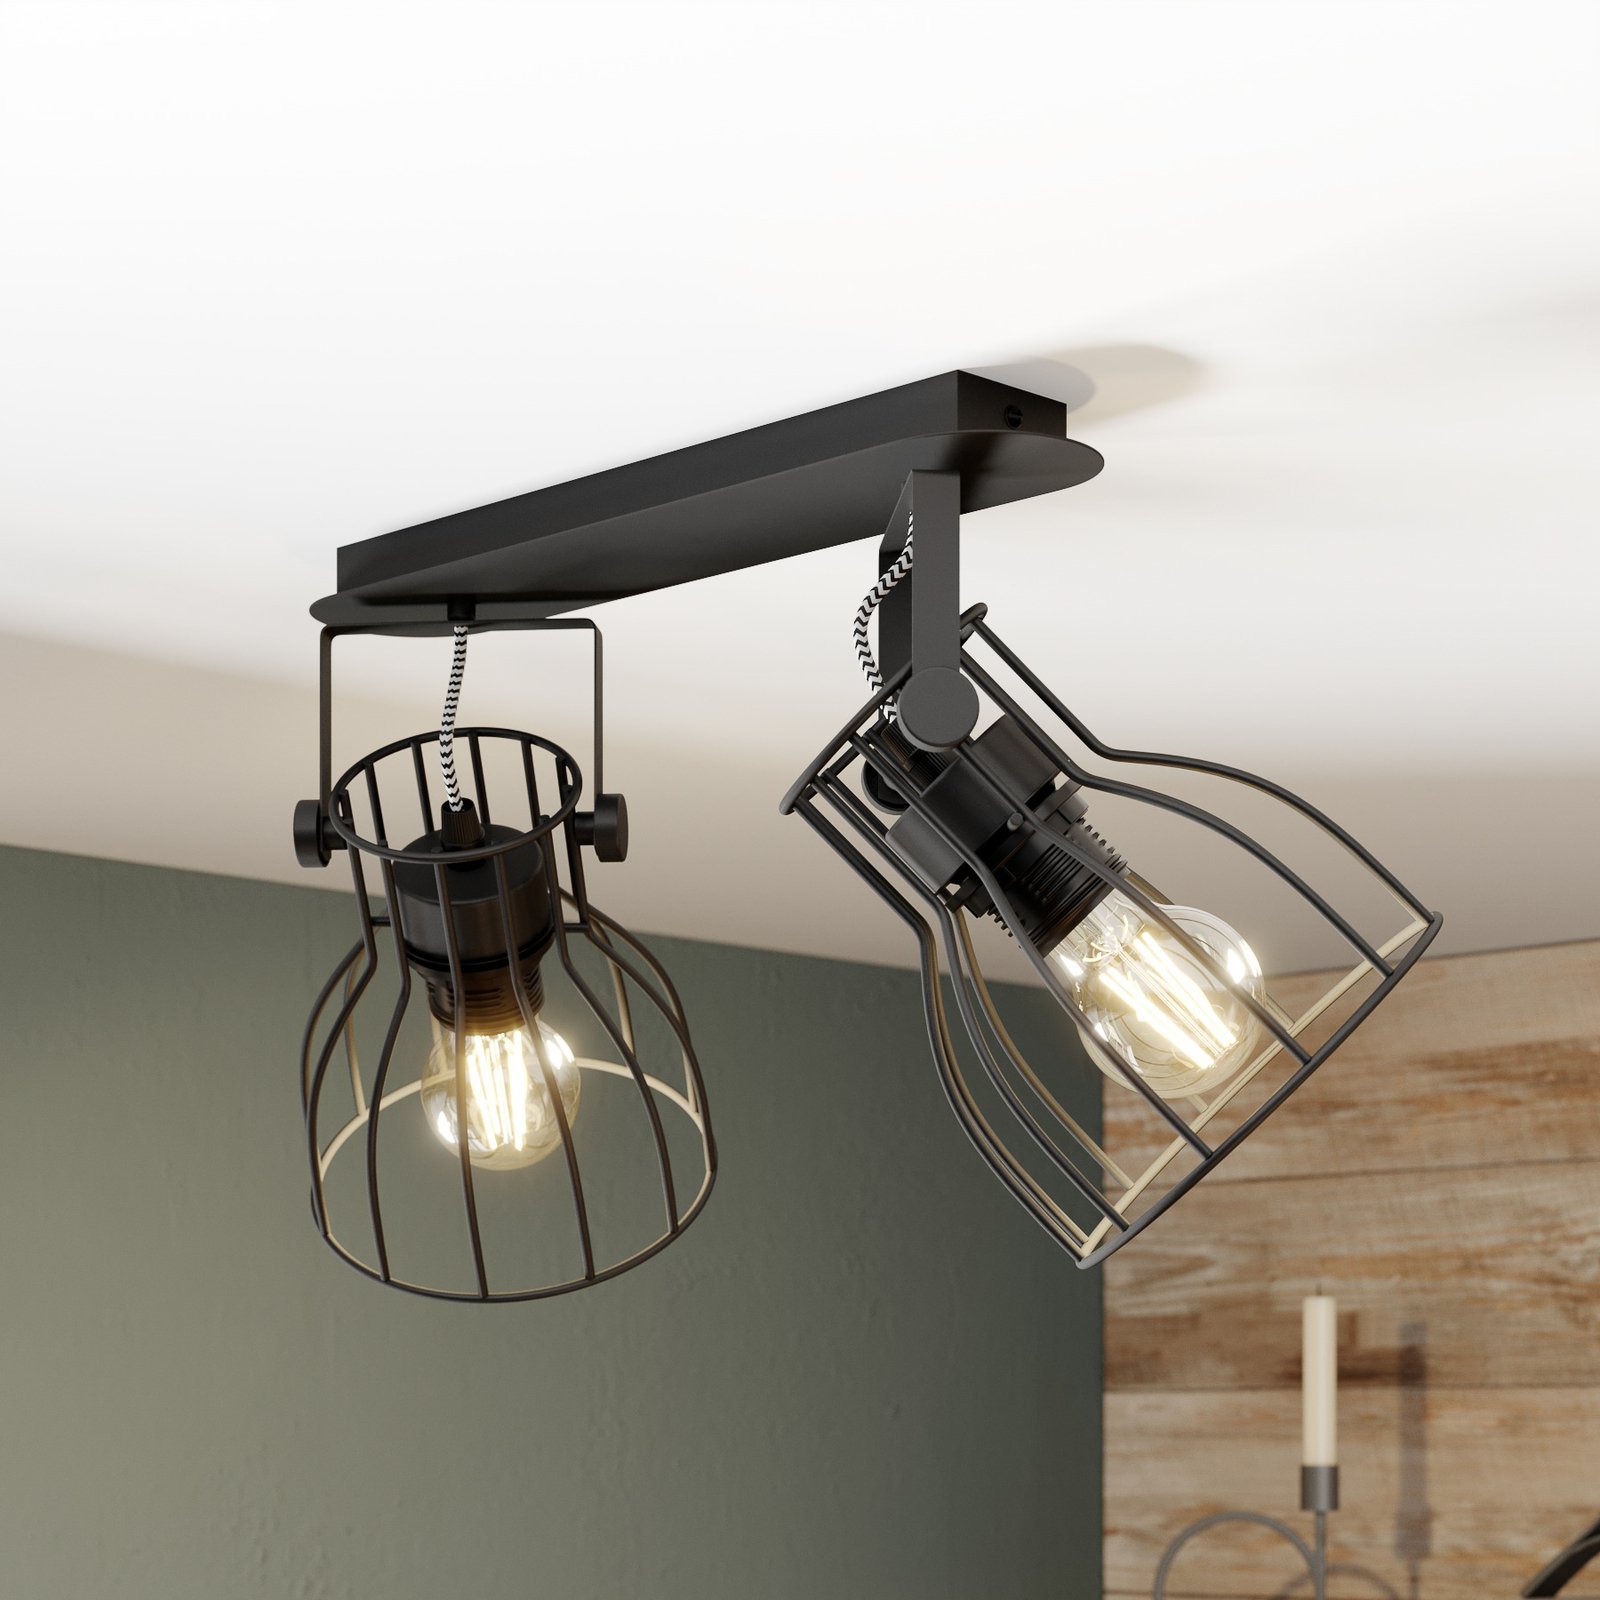 Alano plafondlamp, zwart, 2-lamps uitvoering